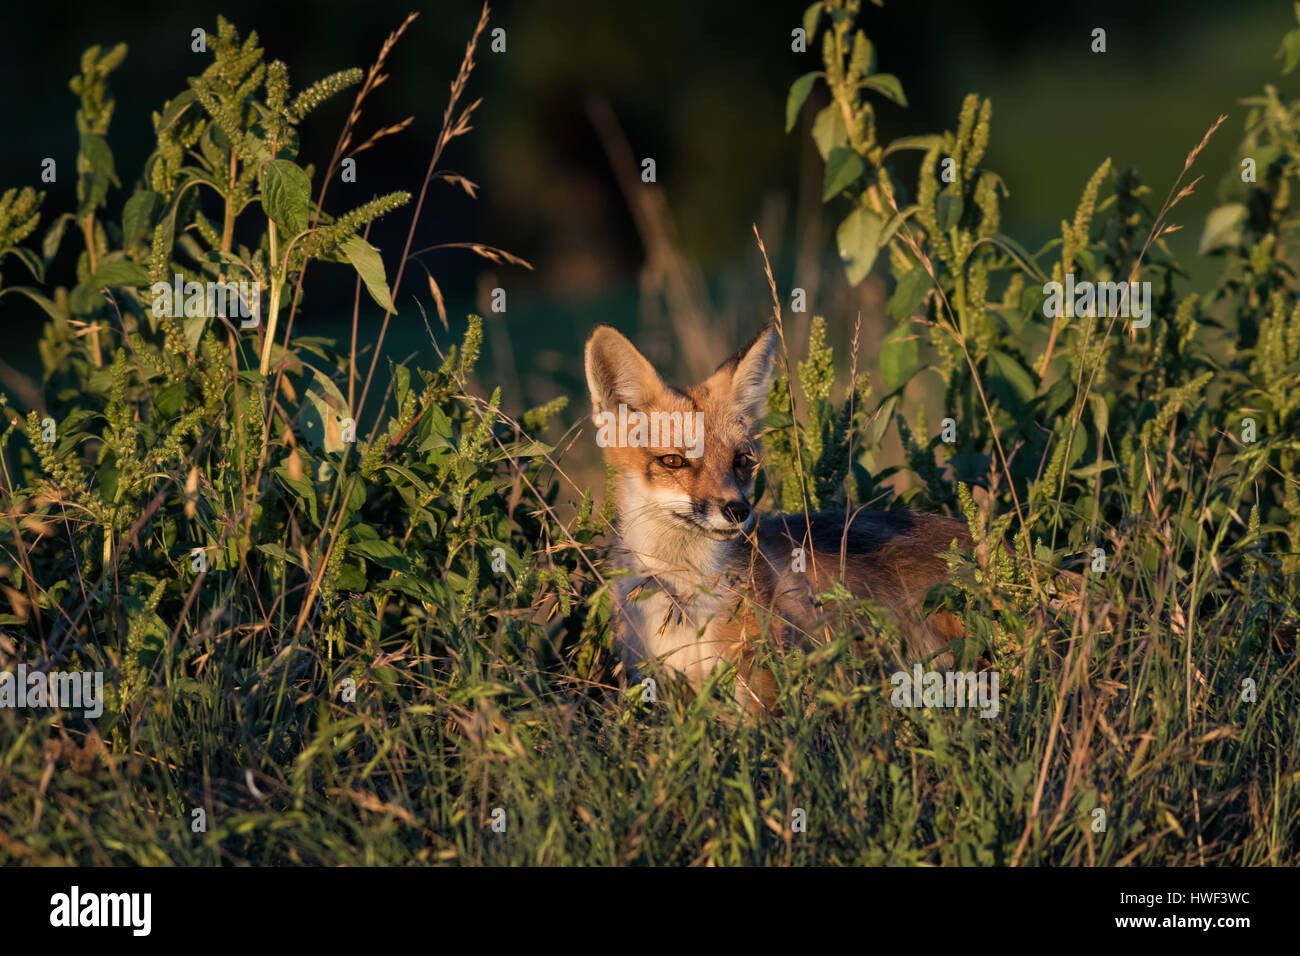 Un de ses pairs red fox creek accueil dans un golf urbain, illustrant les défis auxquels doivent s'adapter à la faune urbaine afin de survivre. Banque D'Images